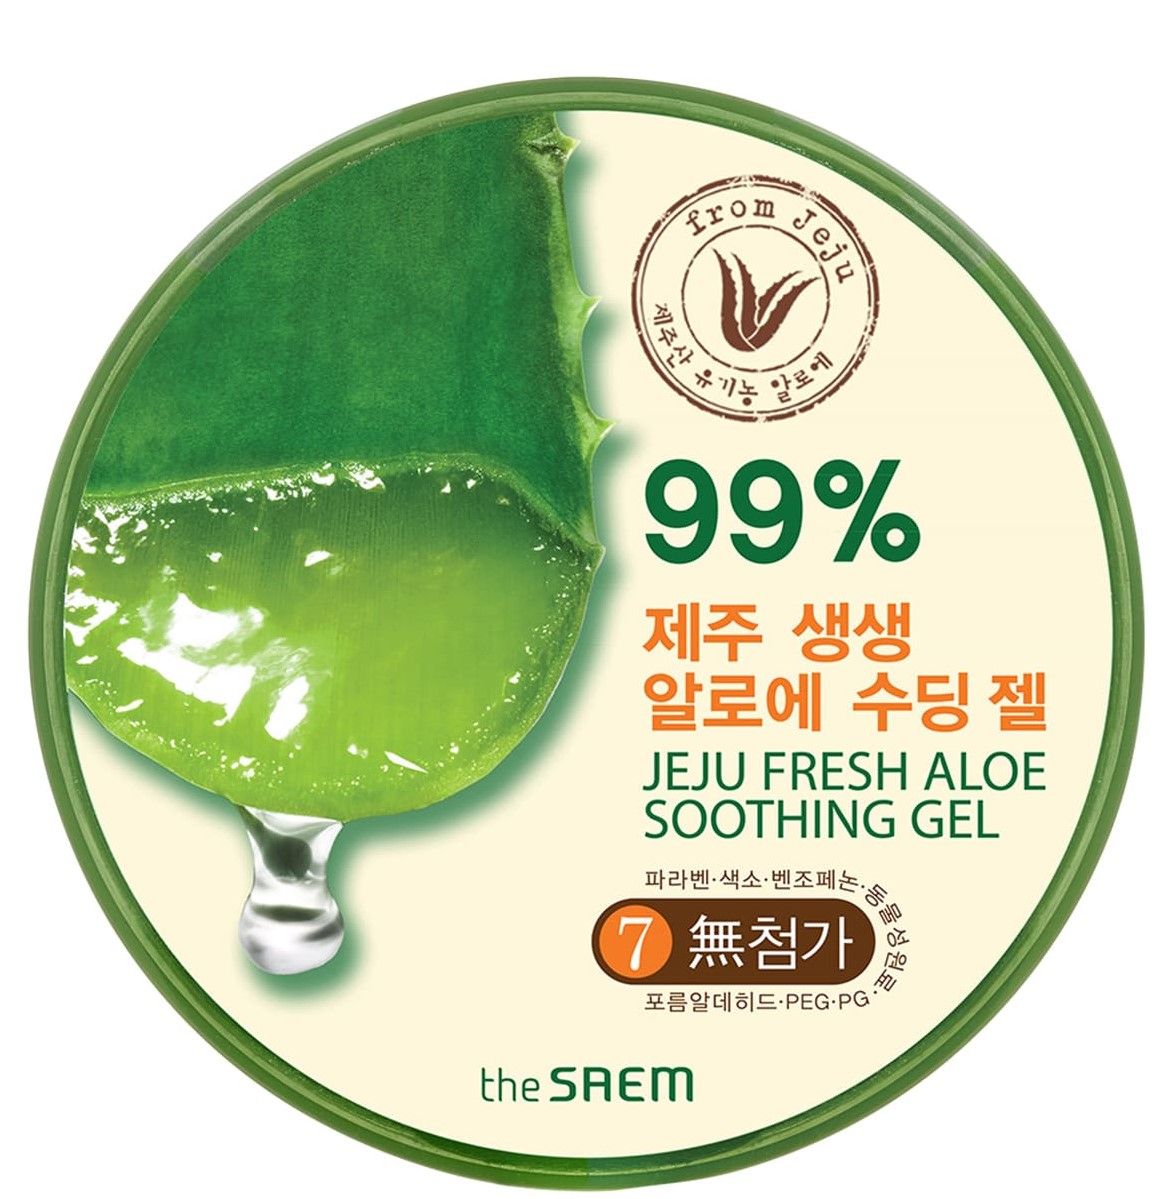 The Saem Jeju Fresh 99% гель для лица и тела, słoik the saem гель с алоэ универсальный увлажняющий jeju fresh aloe soothing gel 99 3 шт